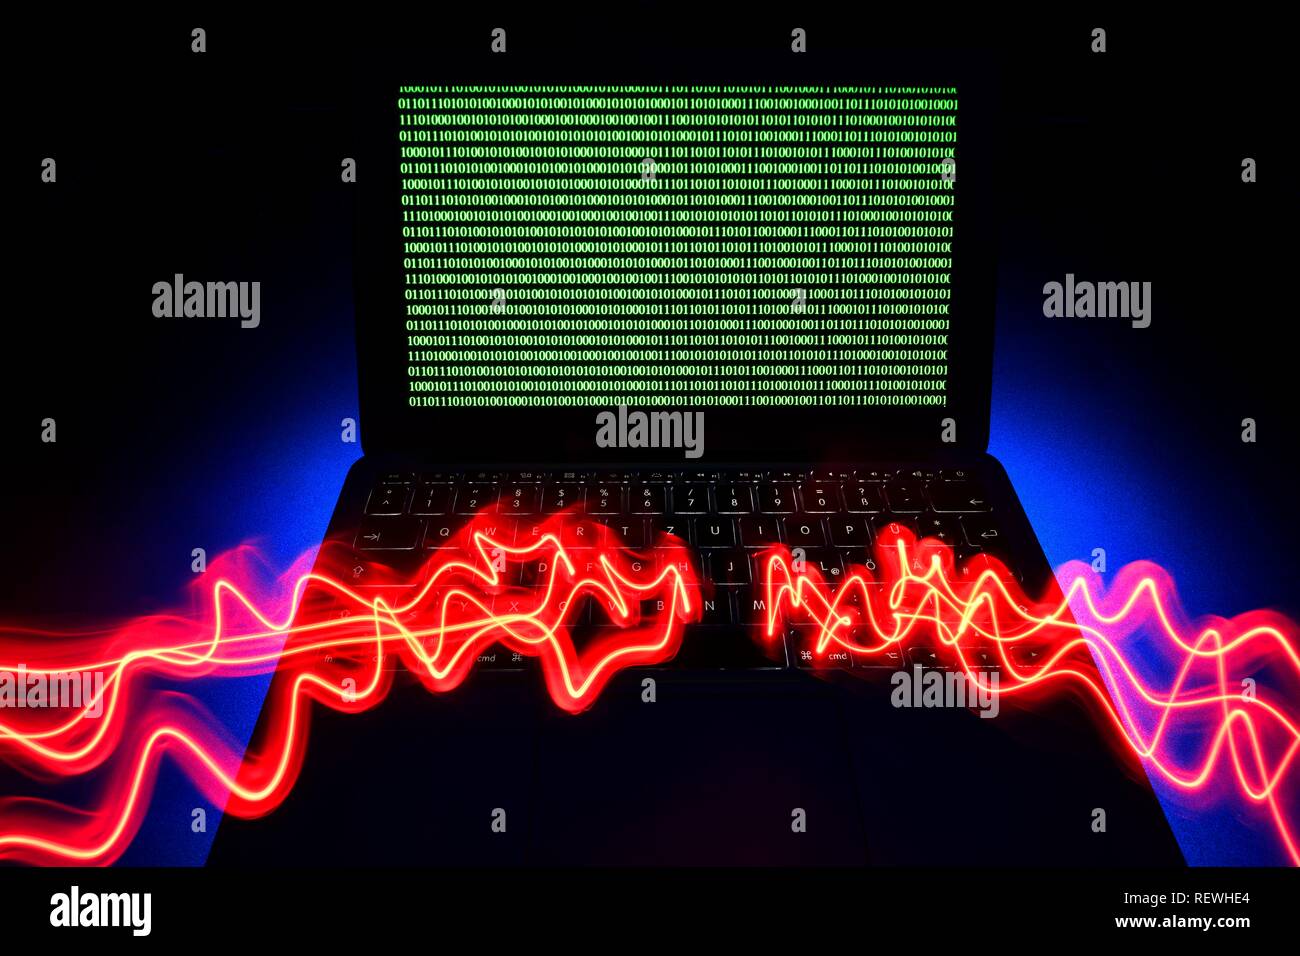 Portátil, imagen simbólica, la ciberdelincuencia, la delincuencia informática, hacker, seguridad de datos, Alemania Foto de stock